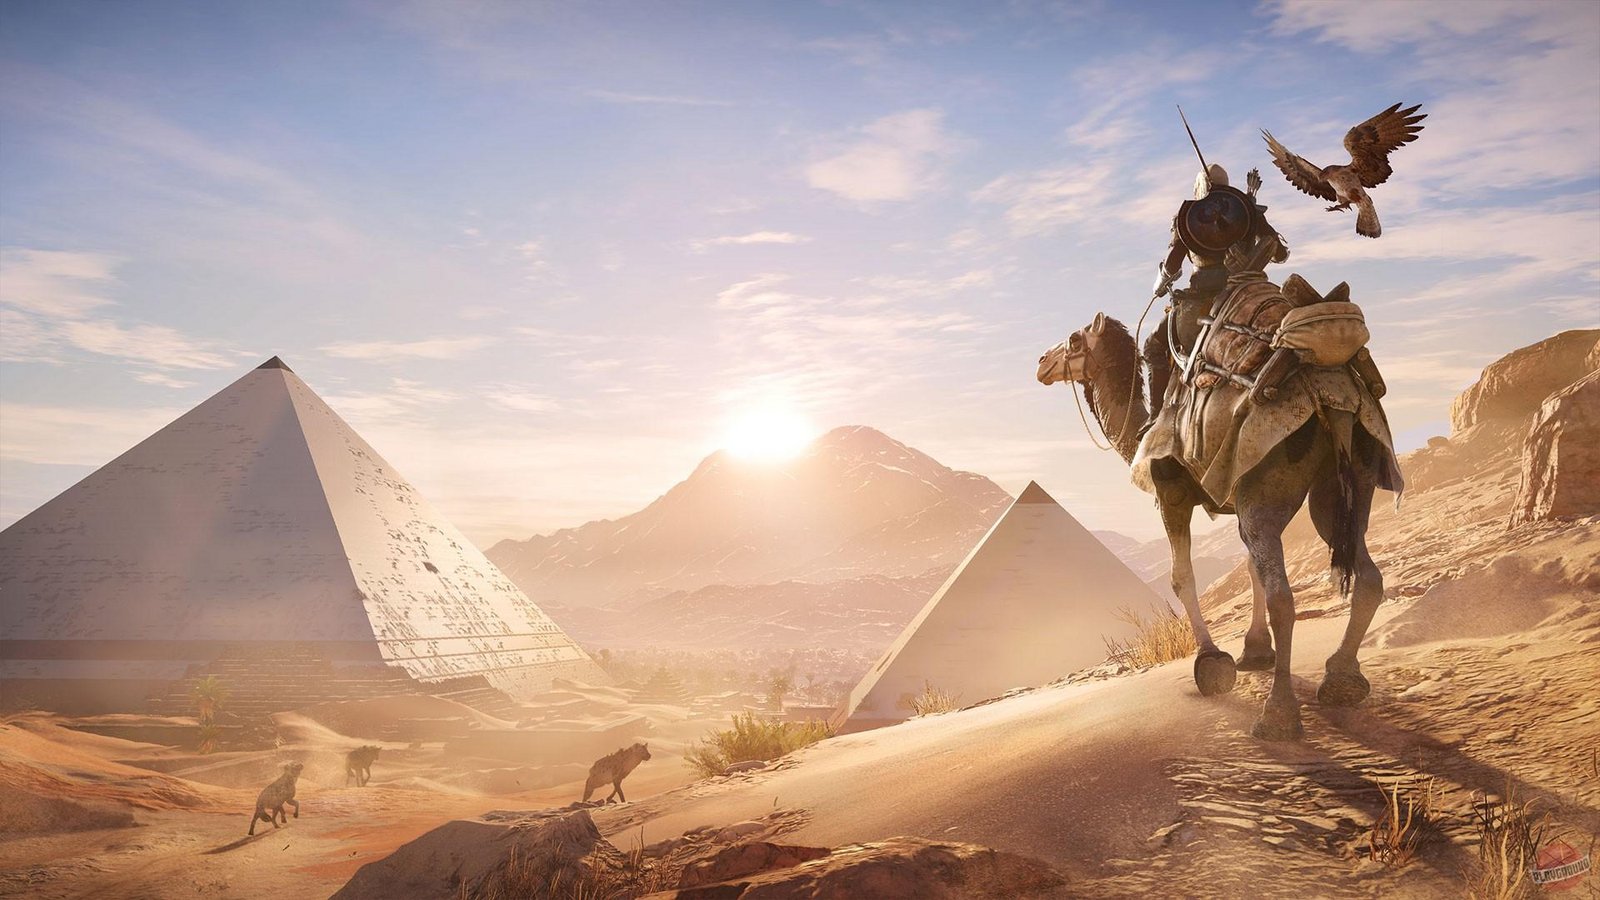 Assassin's Creed: Origins - The Hidden Ones